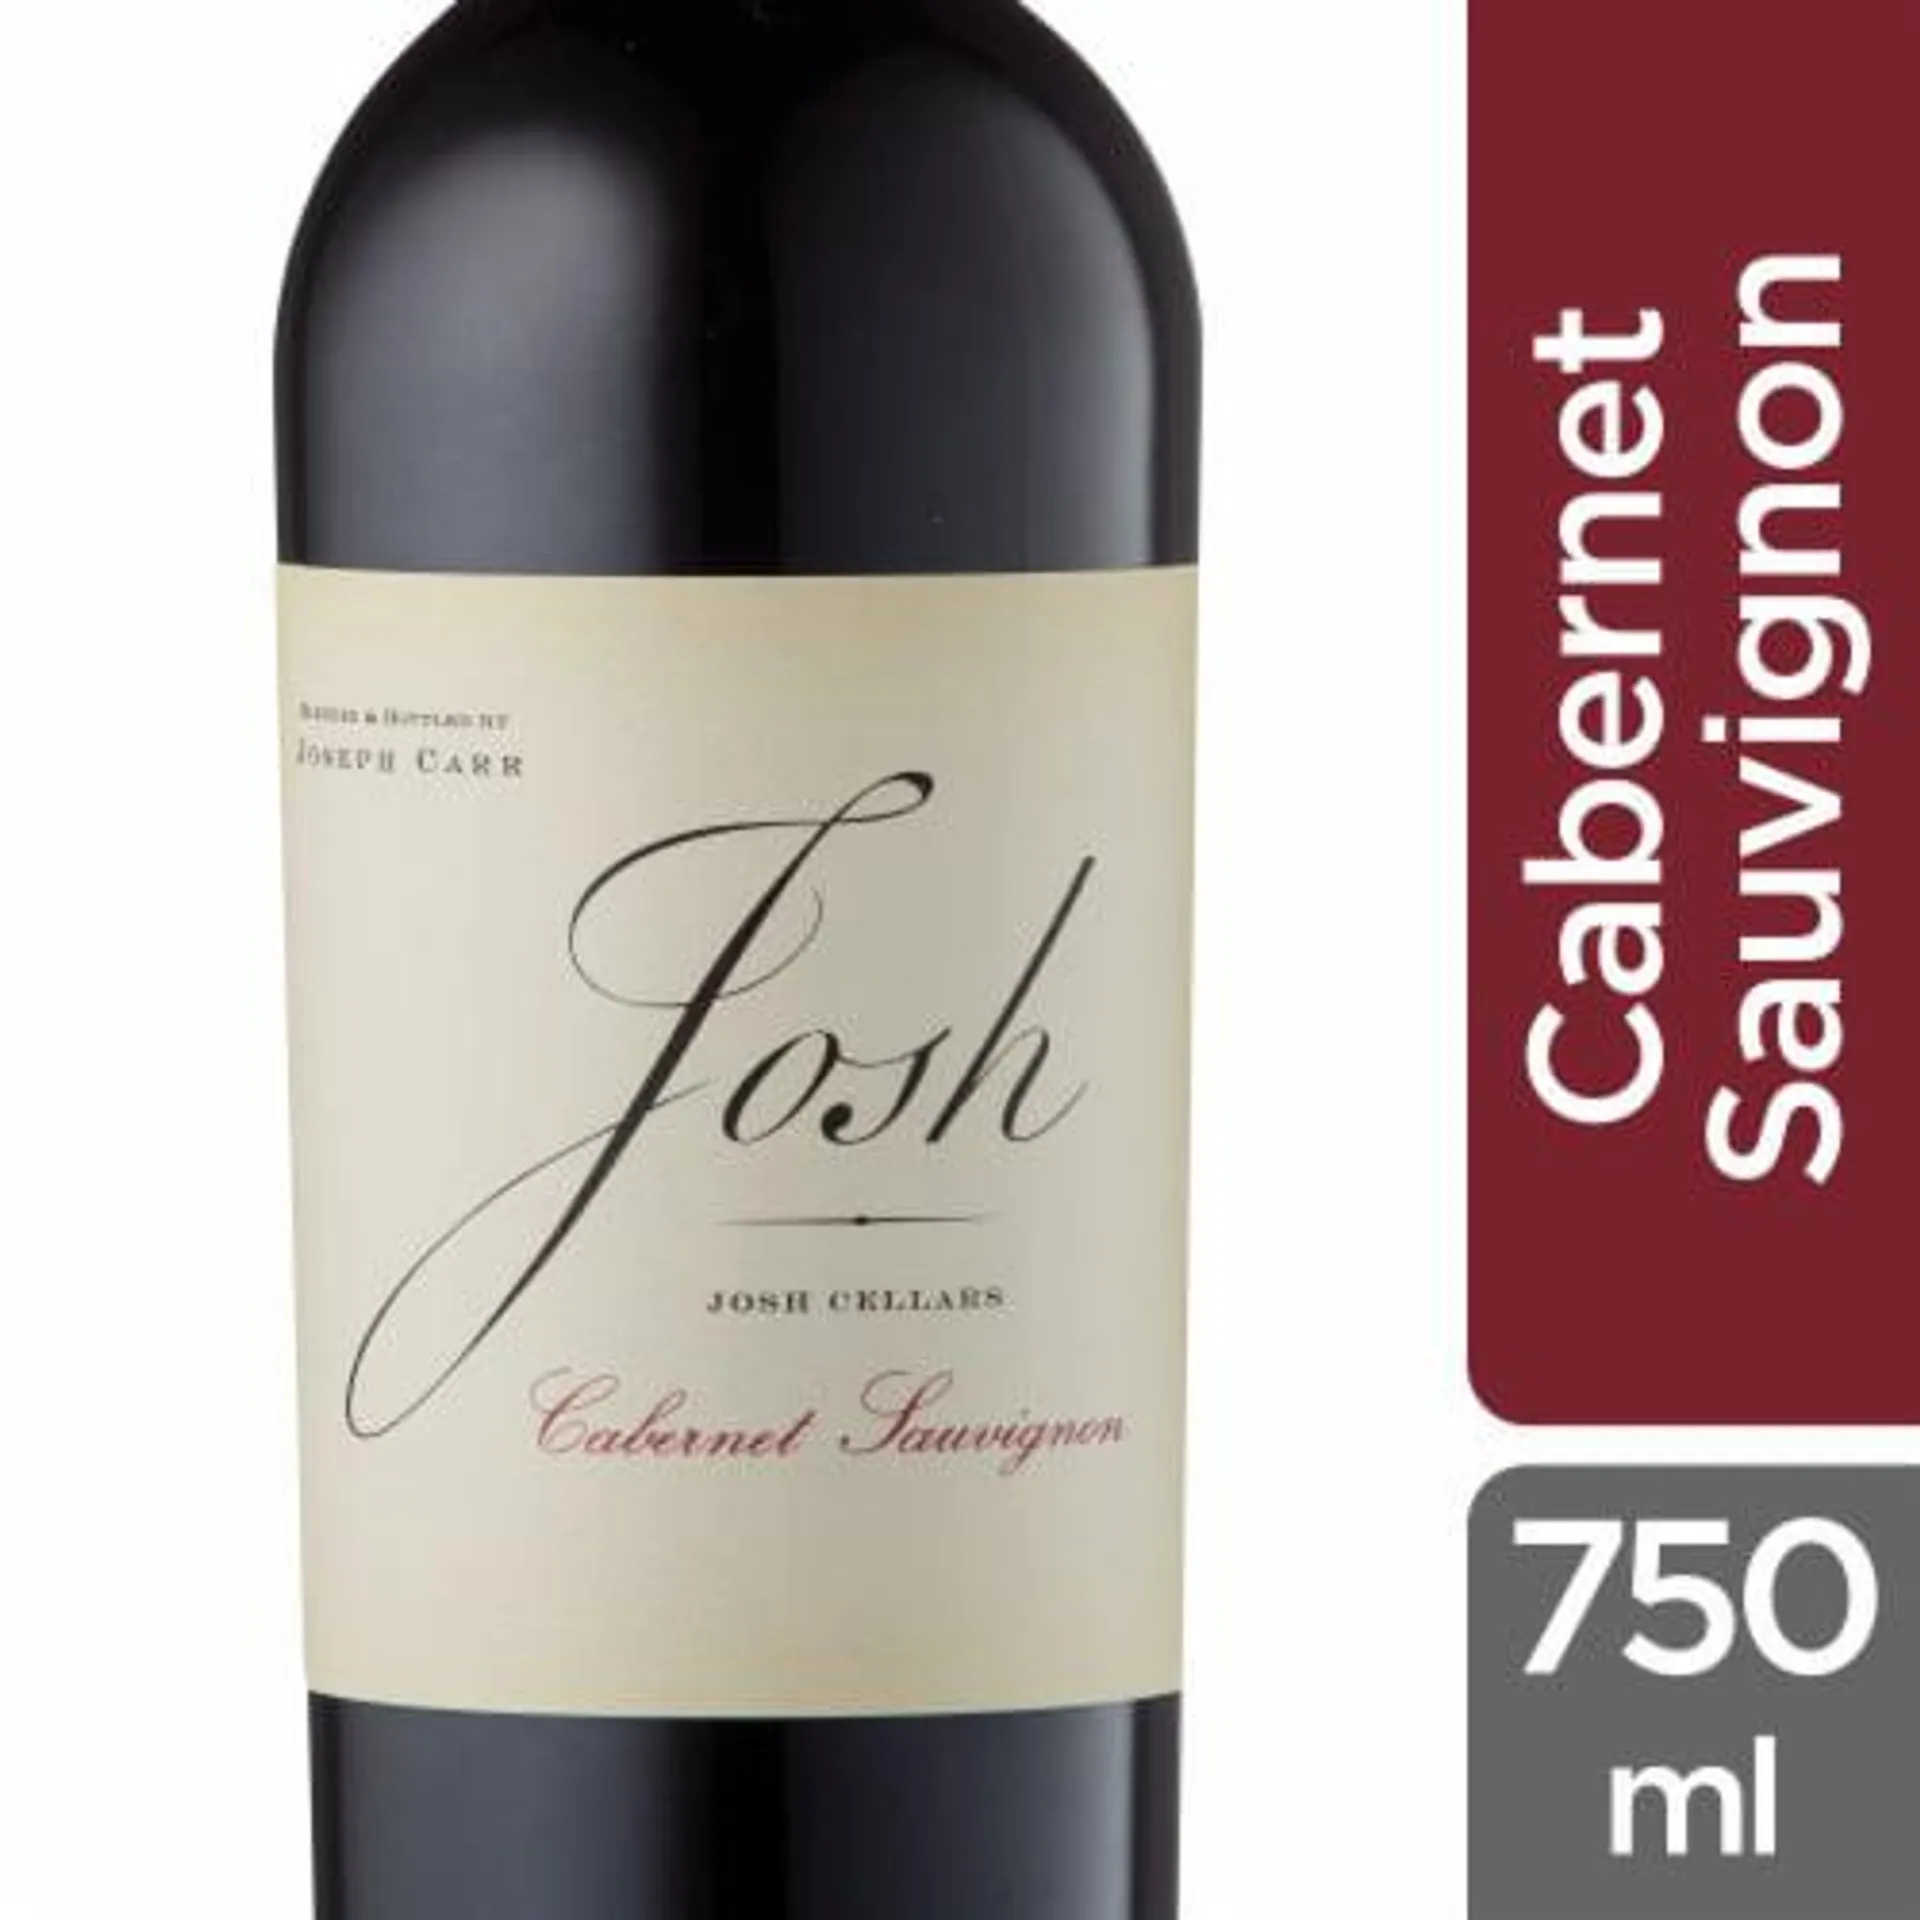 Josh Cellars Cabernet Sauvignon California Red Wine